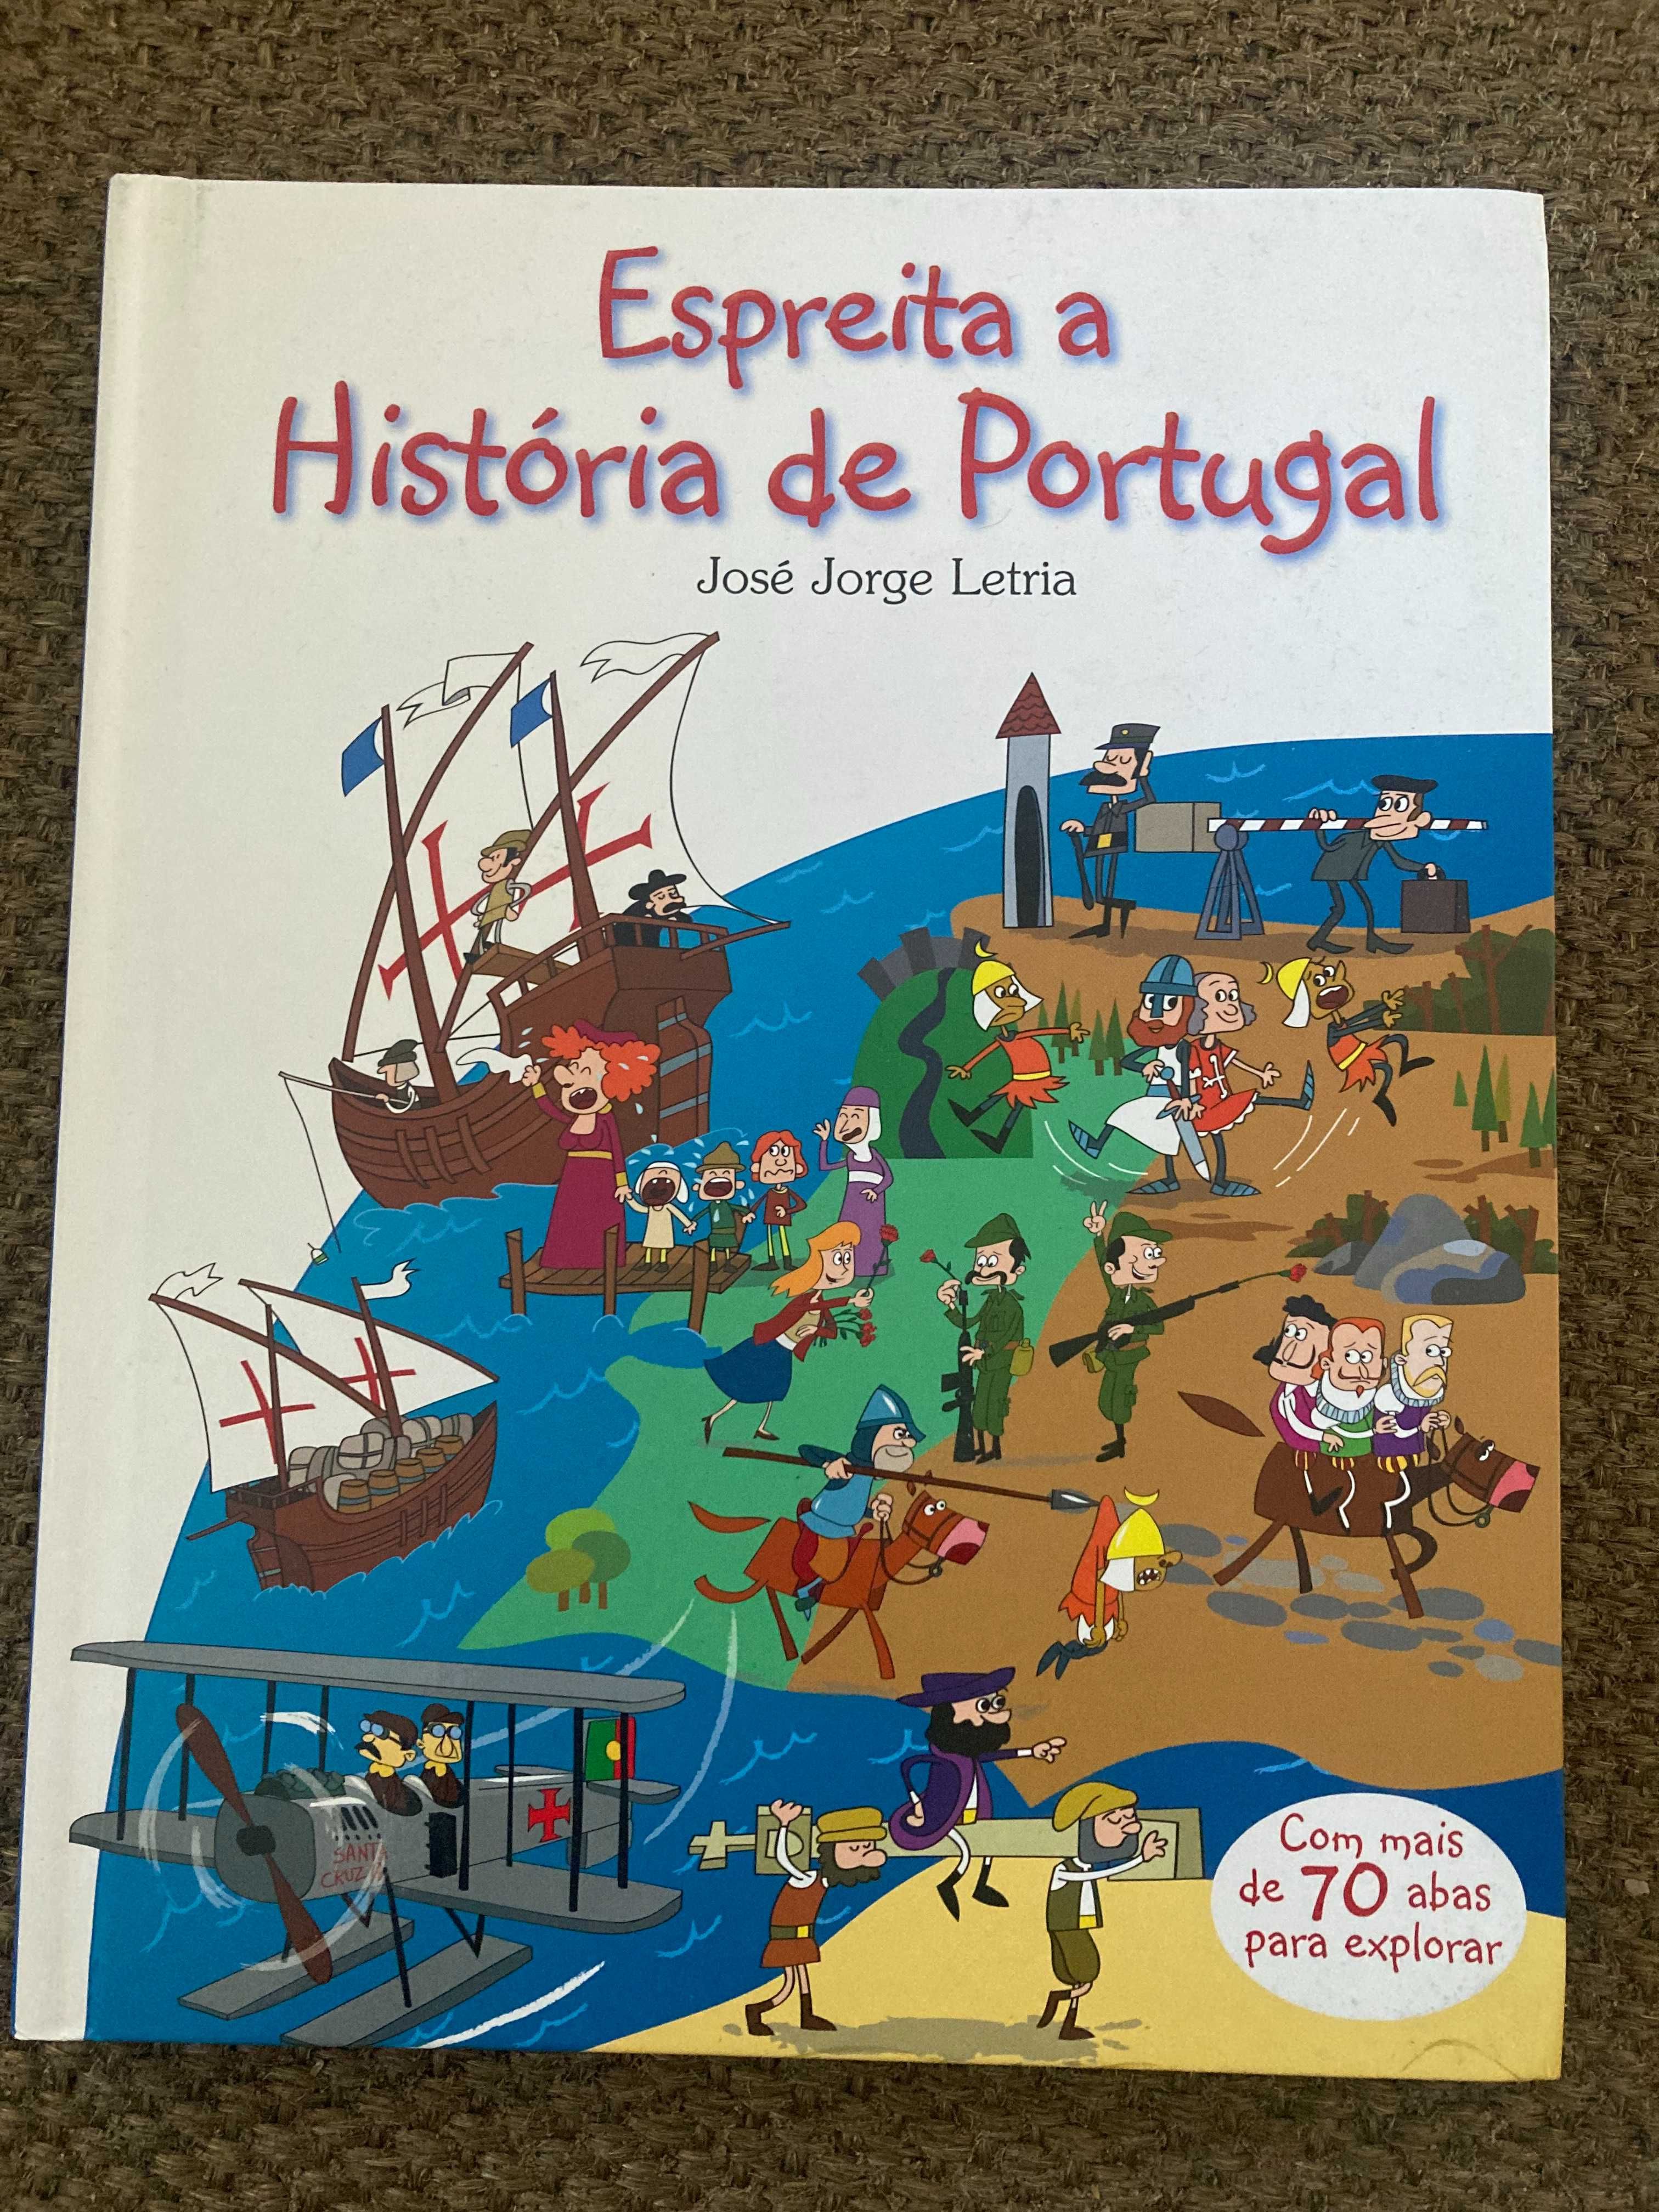 Livro "Espreita a História de Portugal"